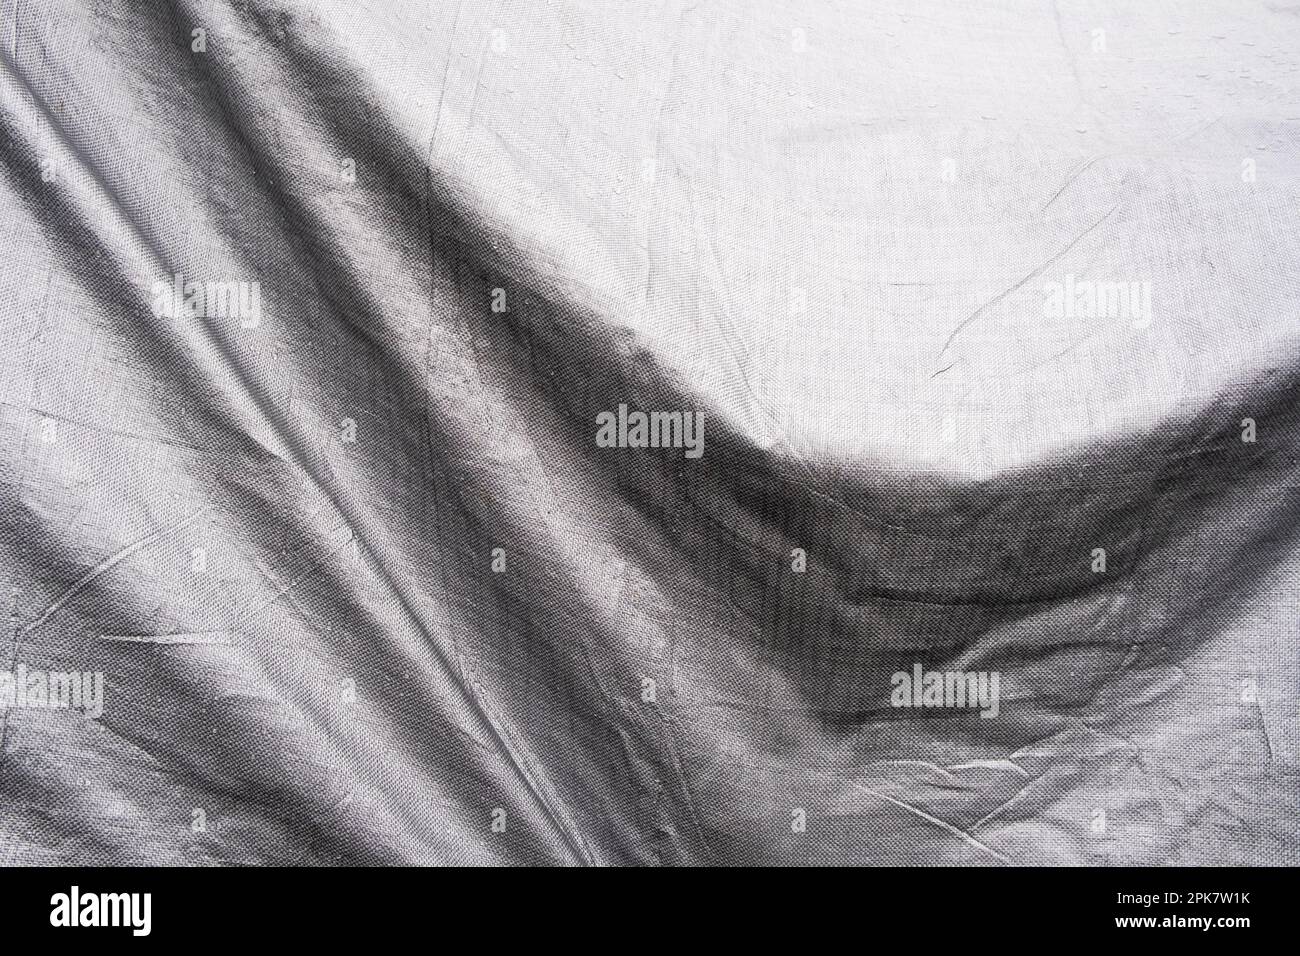 Immagine in bianco e nero, pieghe di telone drappeggiato su oggetti. Foto Stock